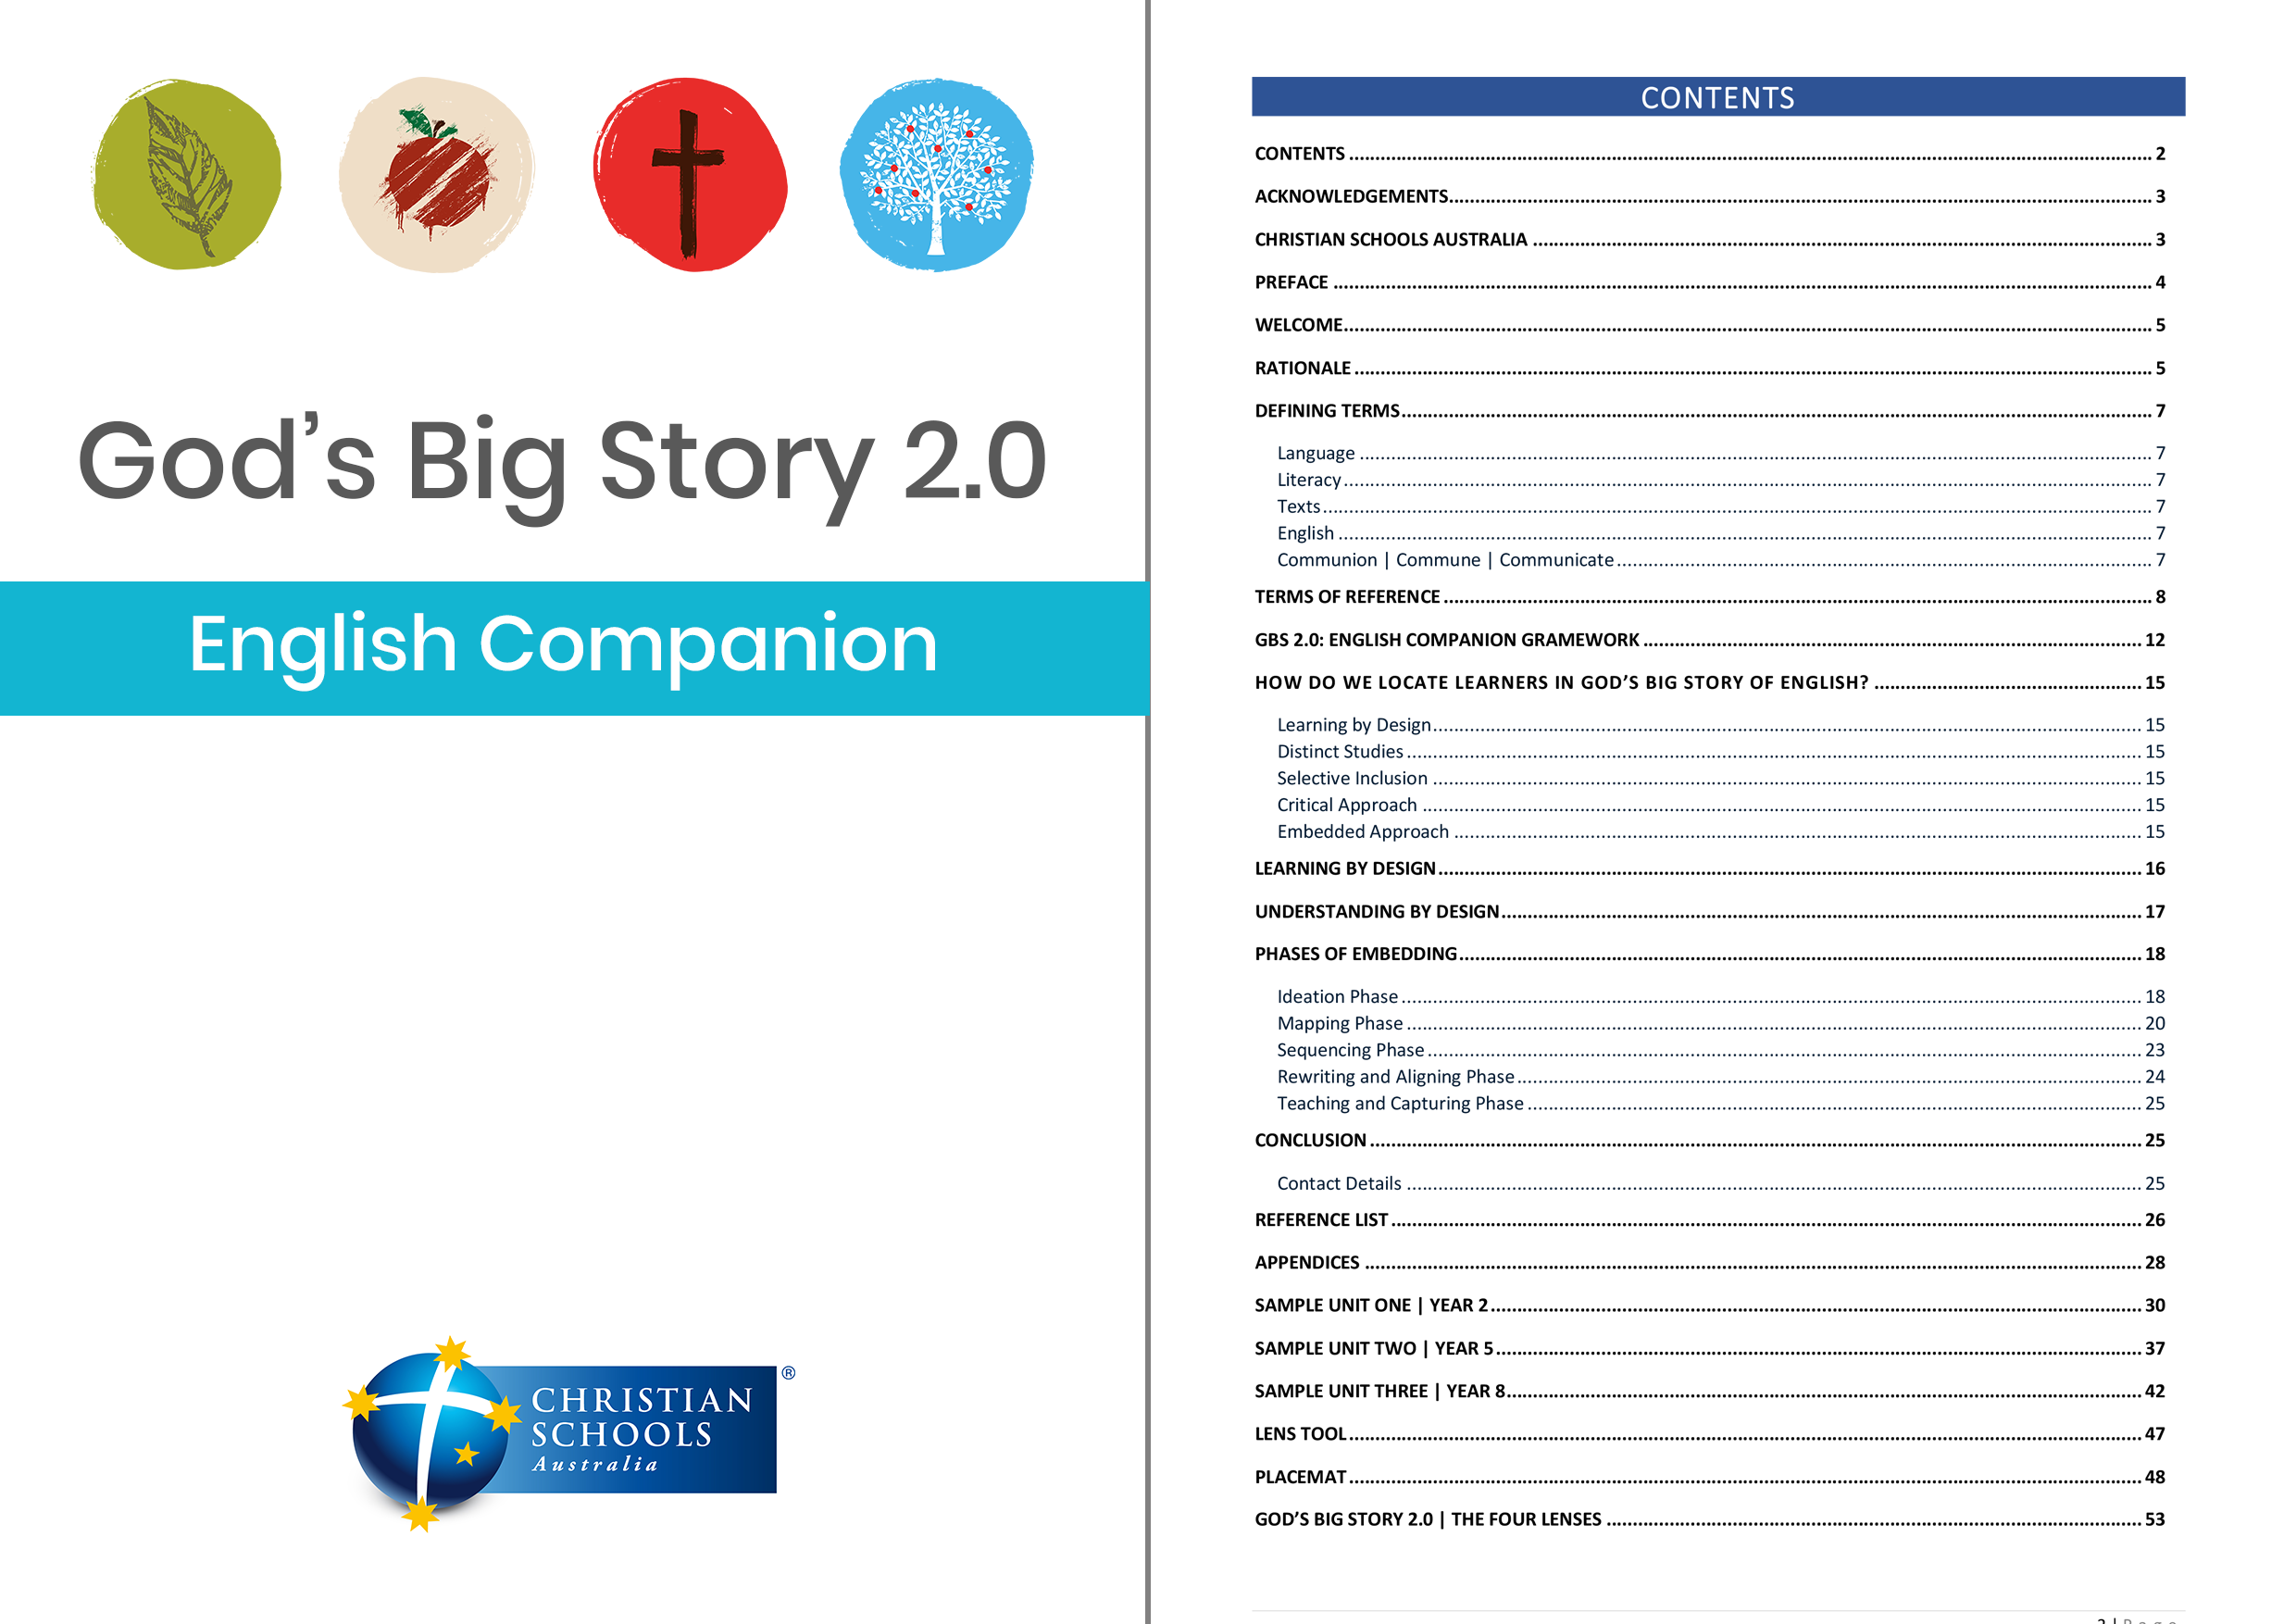 God's Big Story 2.0: English Companion